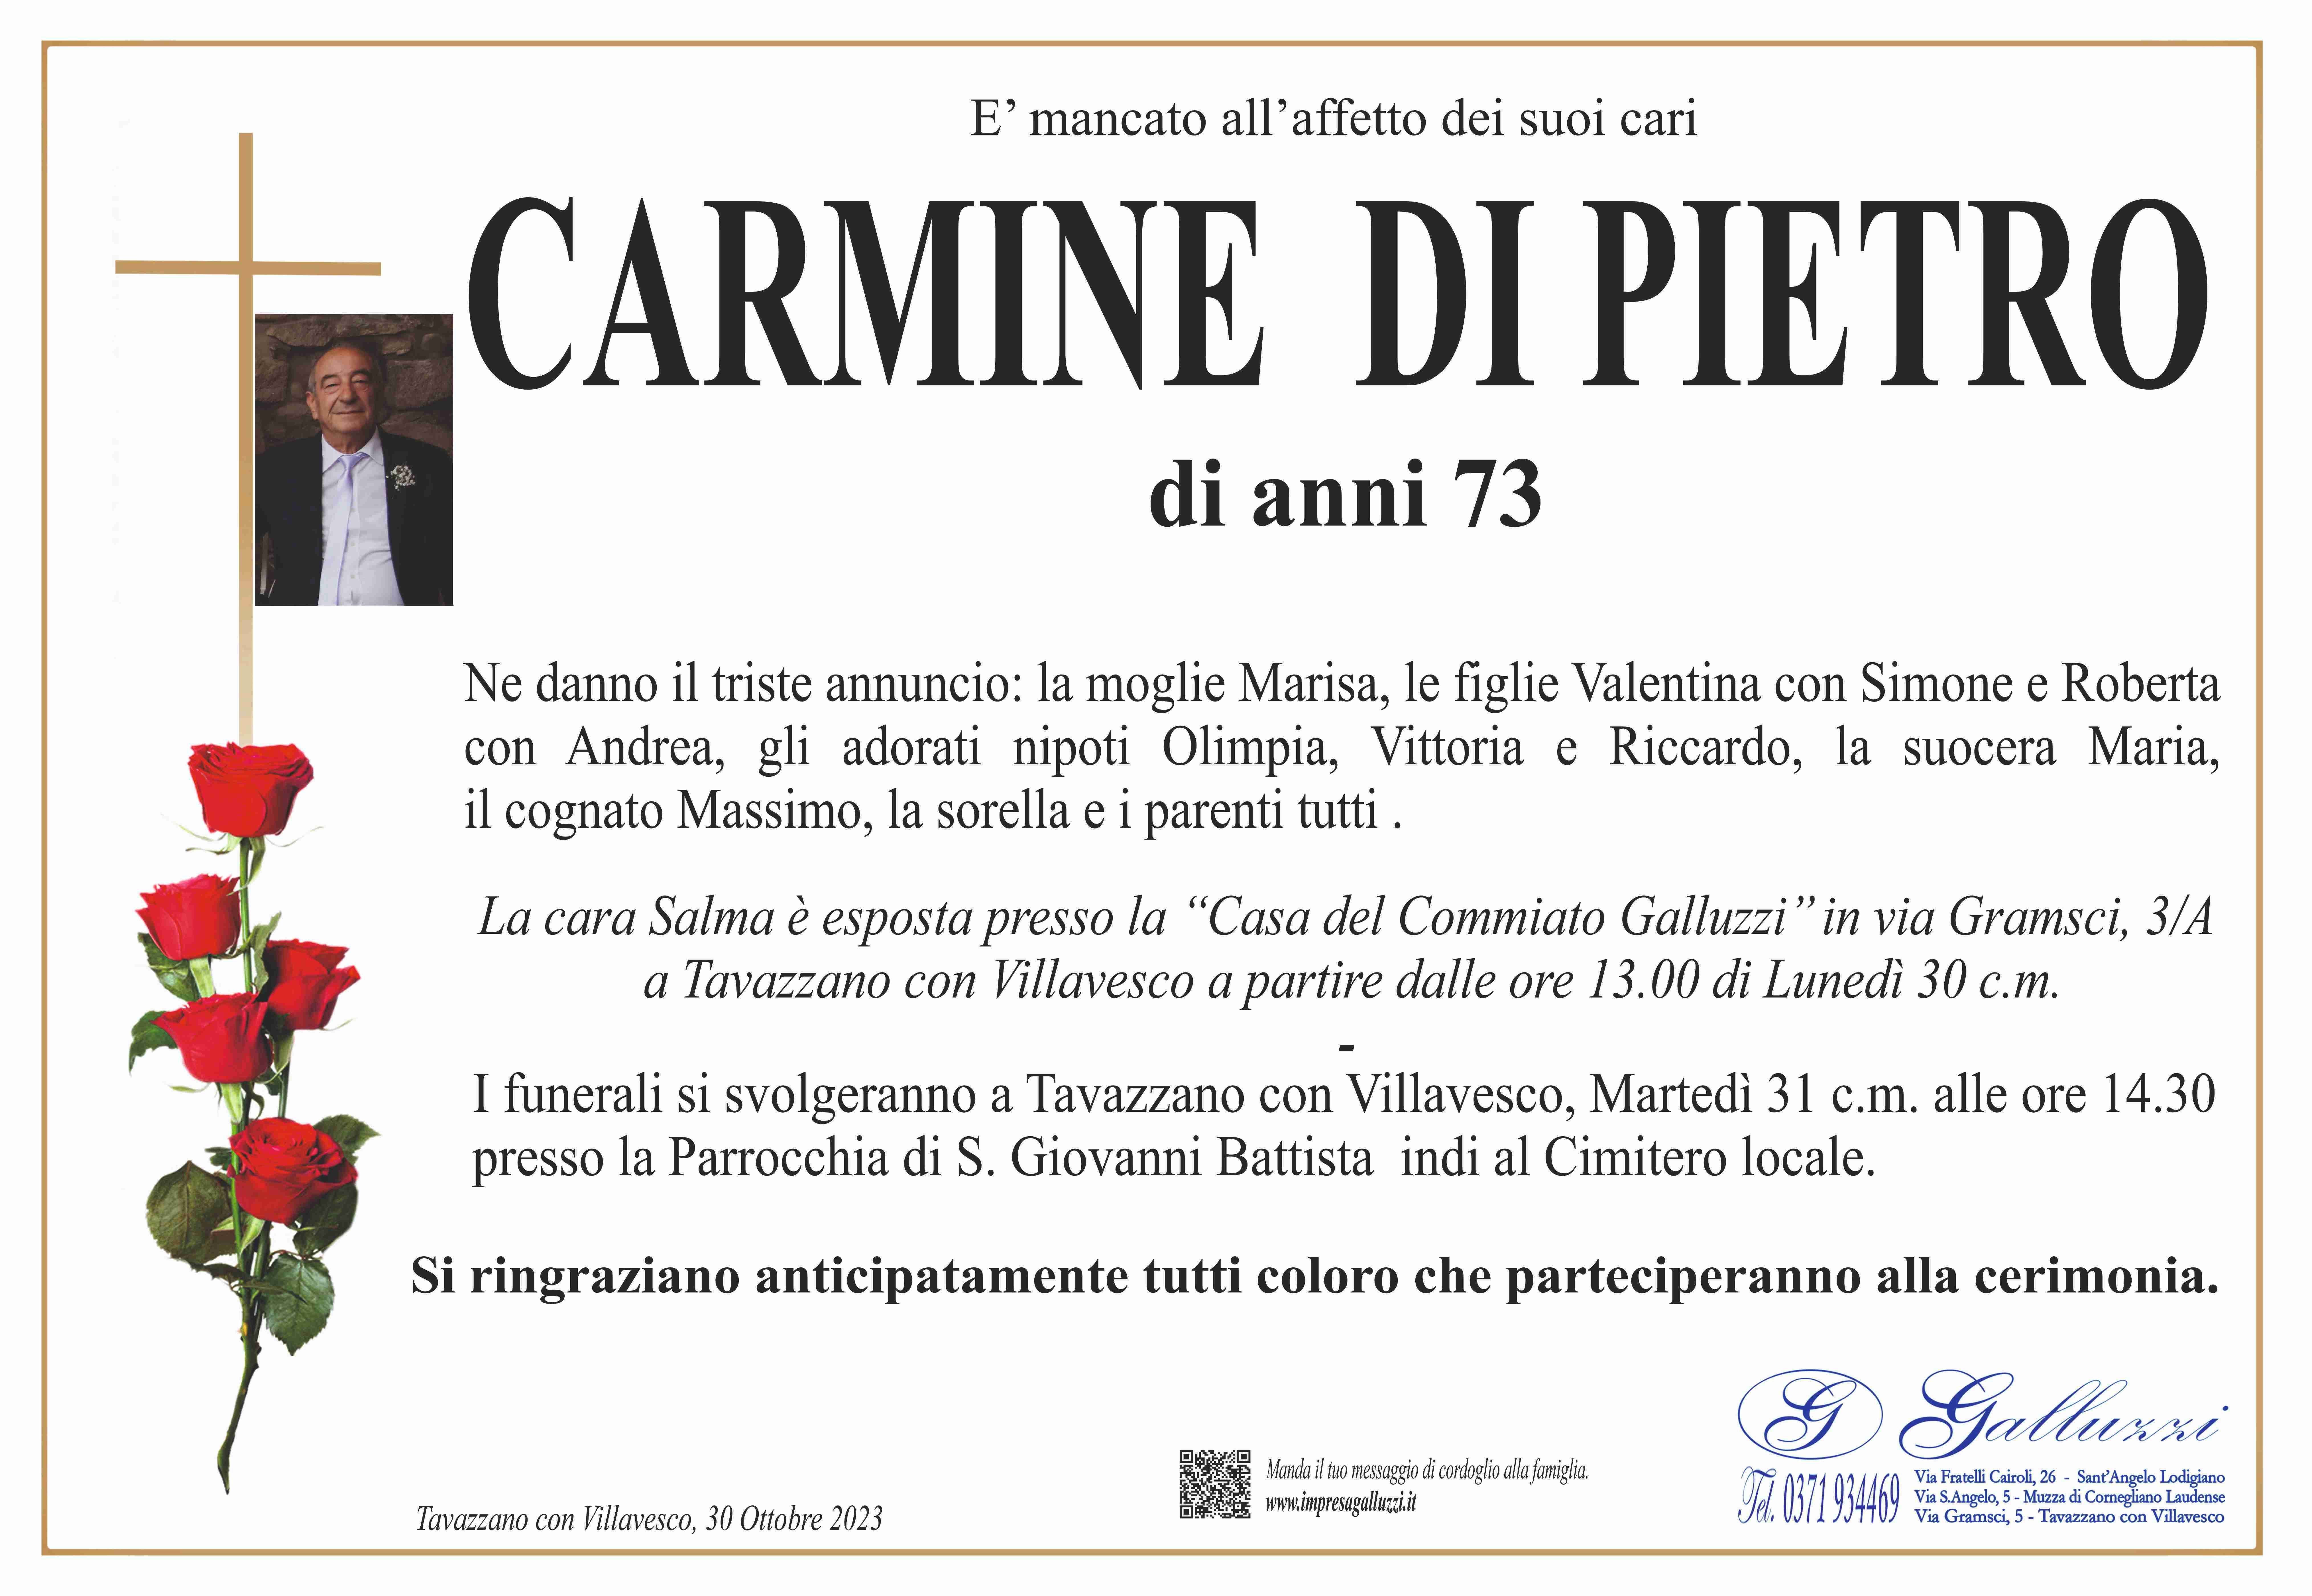 Carmine Di Pietro